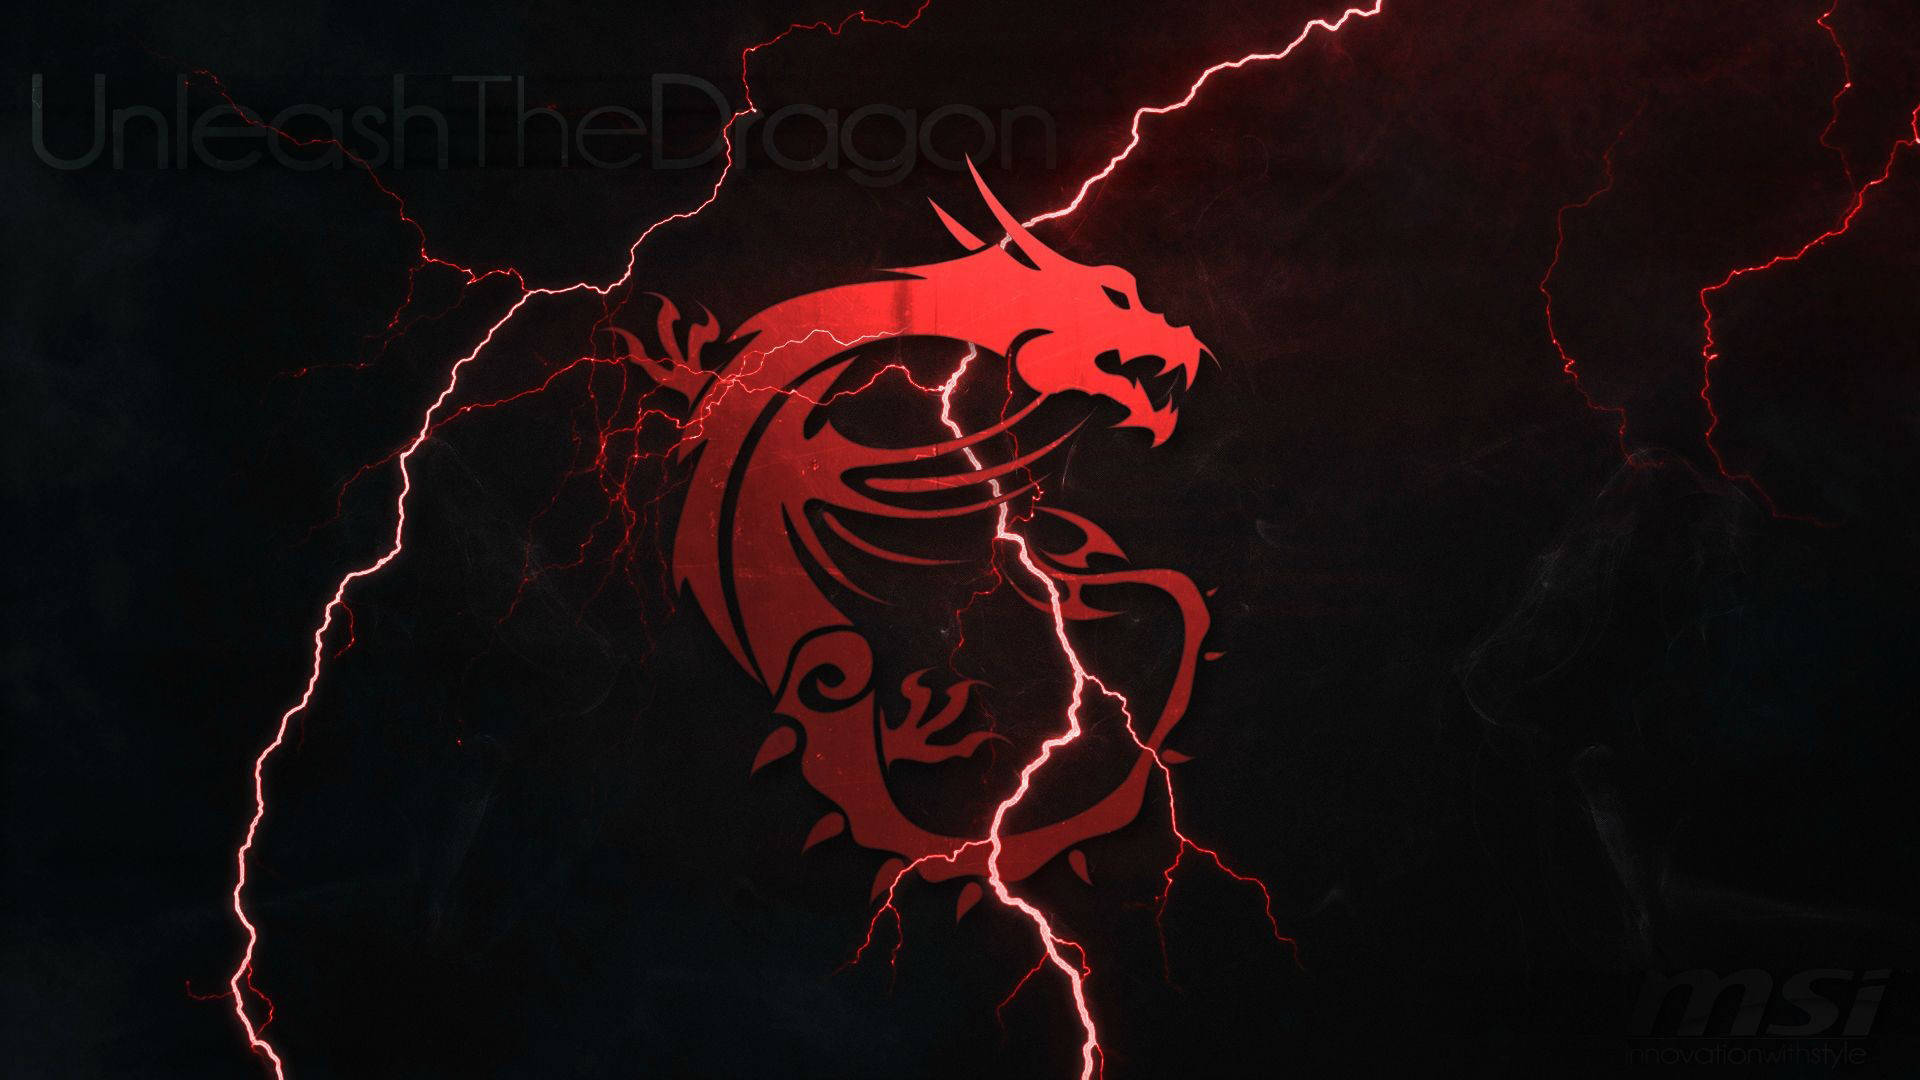 Hd Dragon Red Emblem Wallpaper